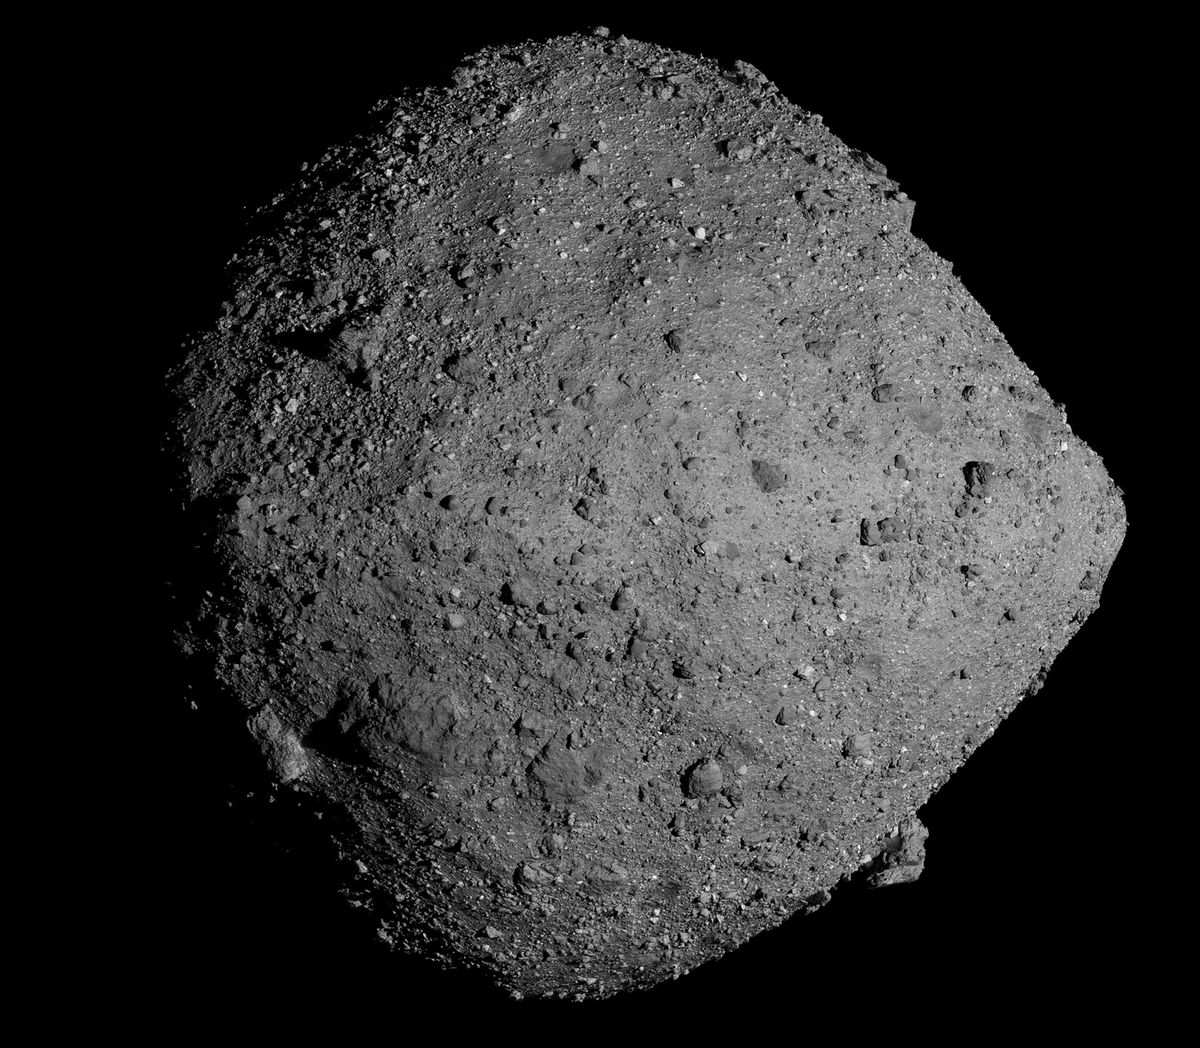 Hoewel het risico extreem klein is hebben NASAwetenschappers ontdekt dat de kans dat de asterode Bennu op de foto in de komende driehonderd jaar op de aarde zal inslaan iets groter is dan tot nu toe werd geschat